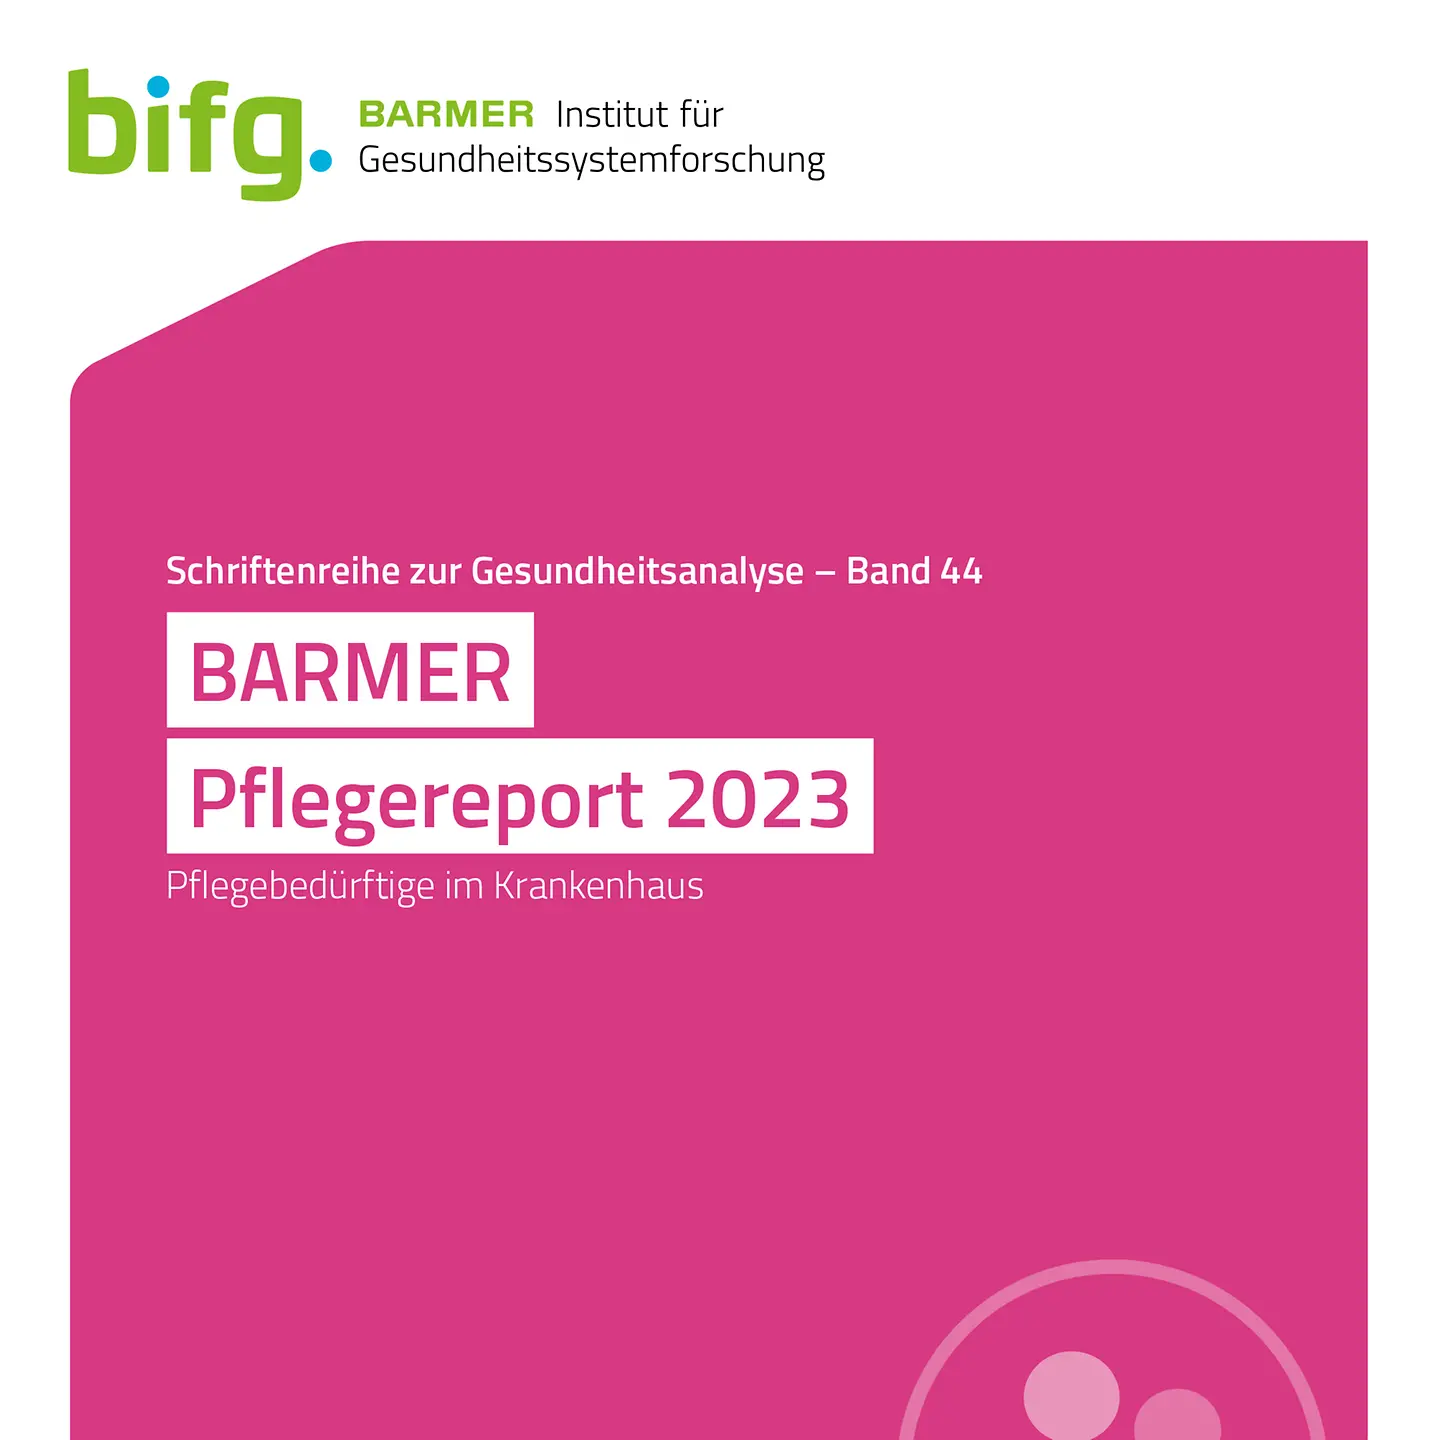 ZU sehen ist das Cover des BARMER-Pflegereports 2023